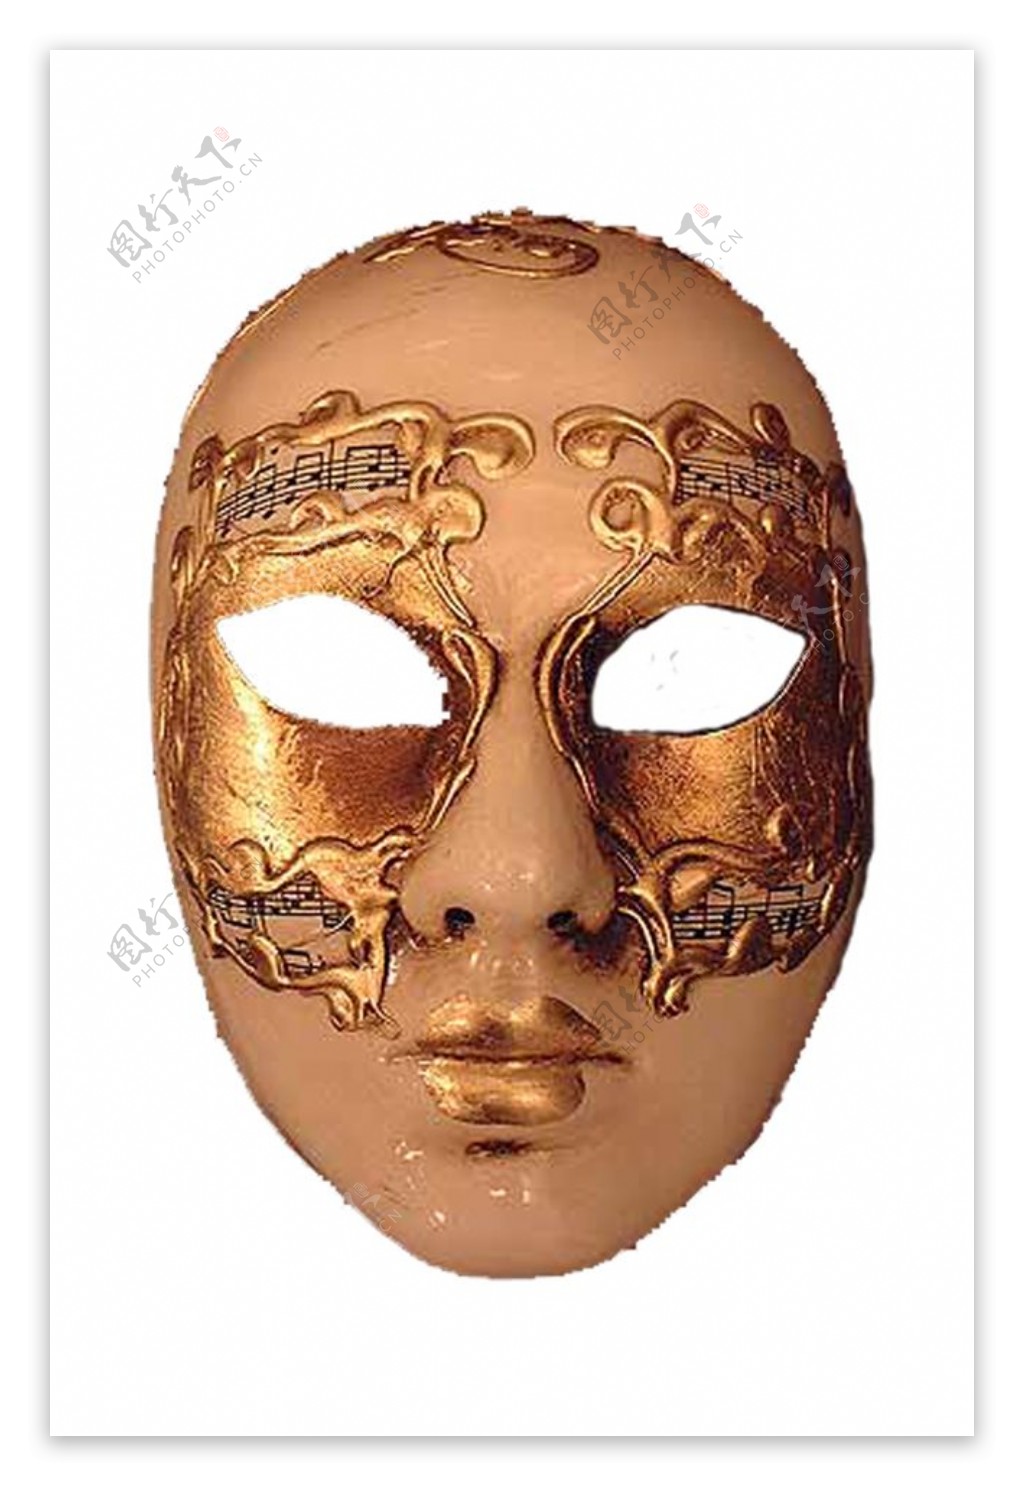 音符金色面具